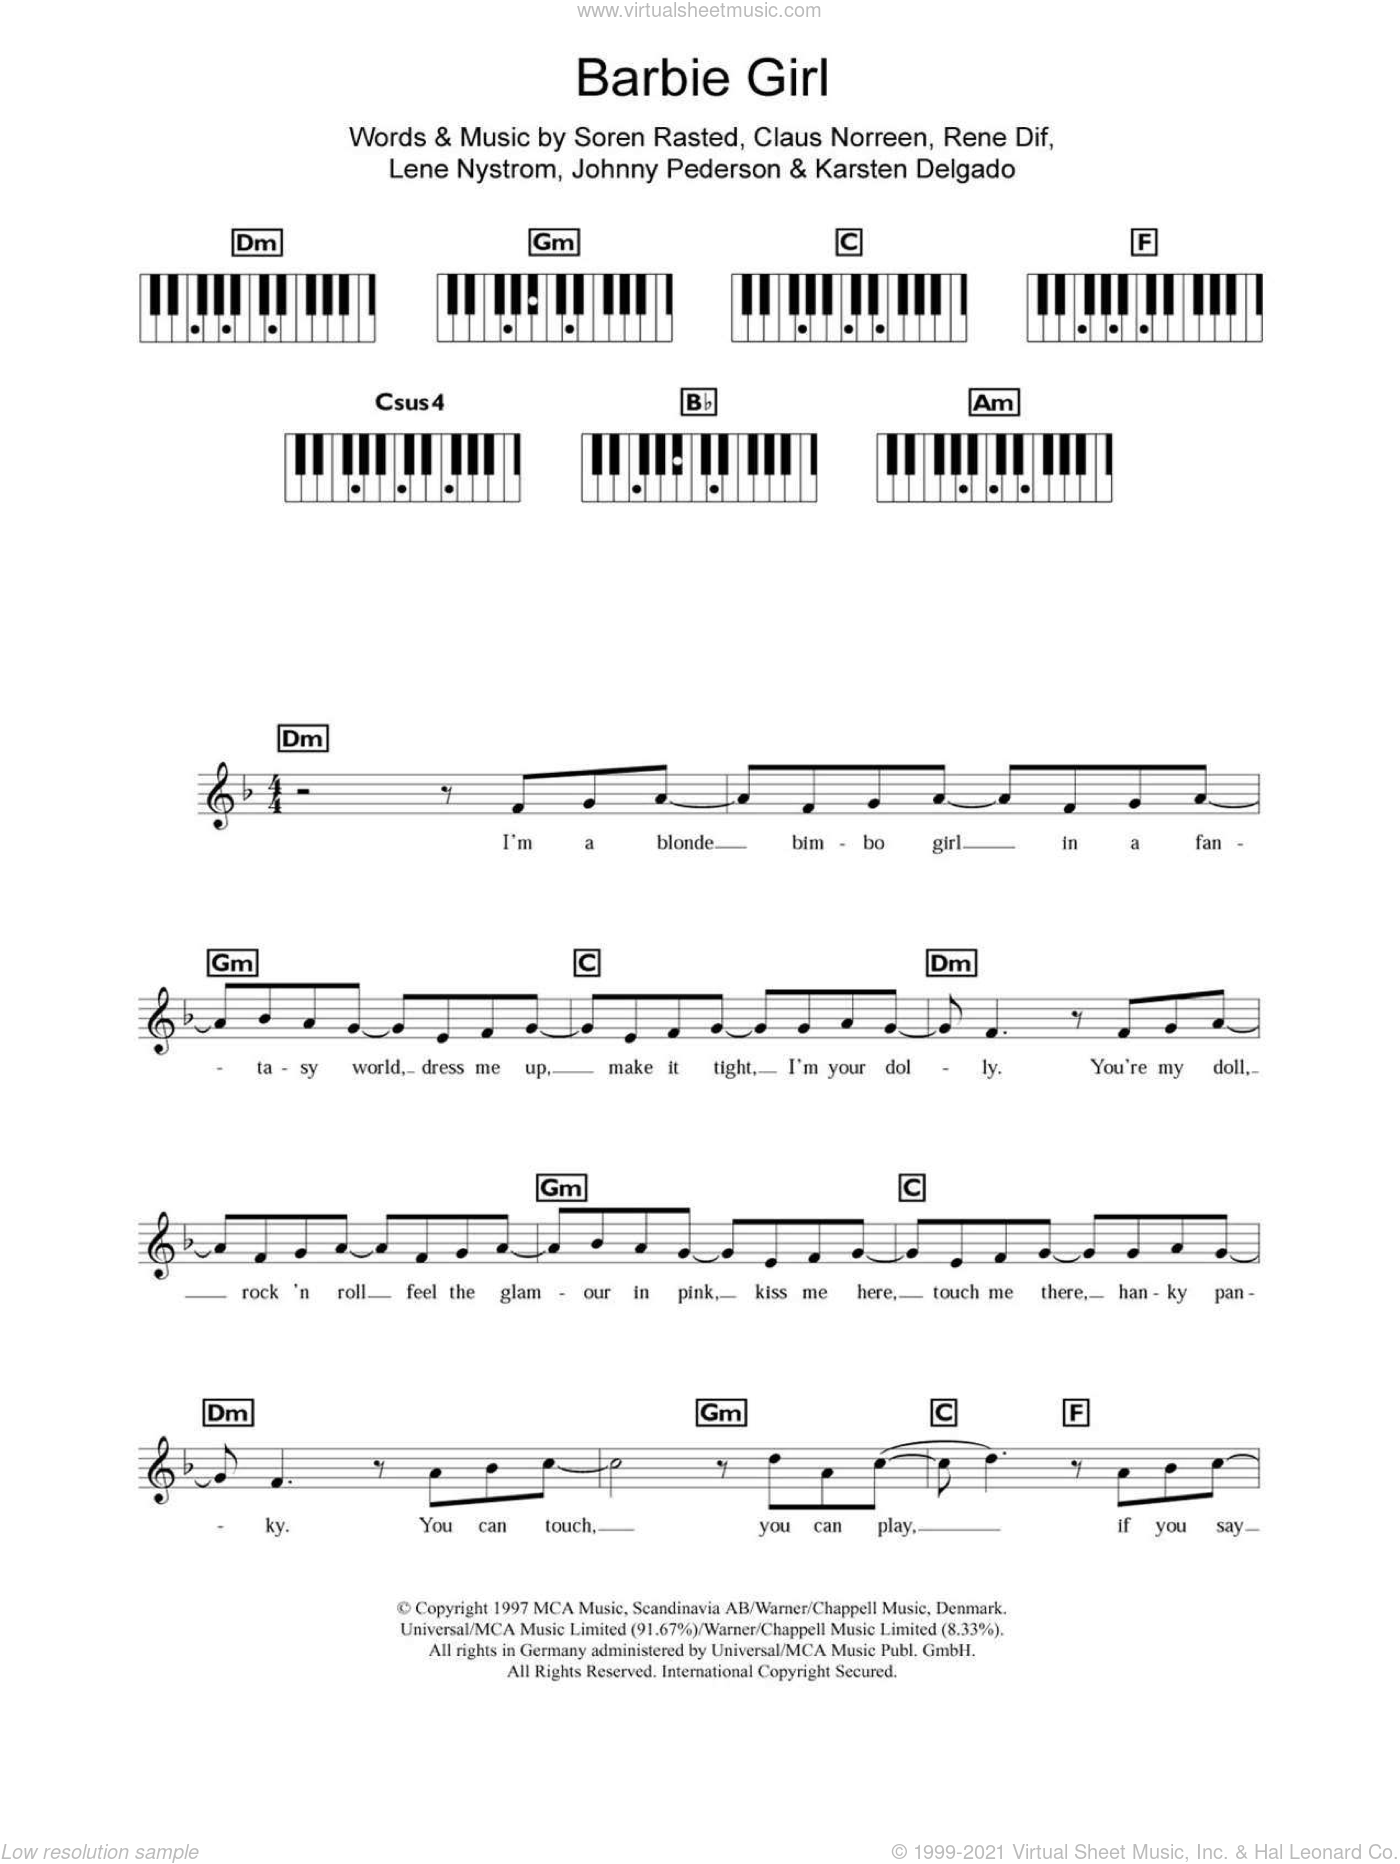 Aqua Barbie Girl Sheet Music For Piano Solo Chords Lyrics Melody - piano sheet music for roblox violin code